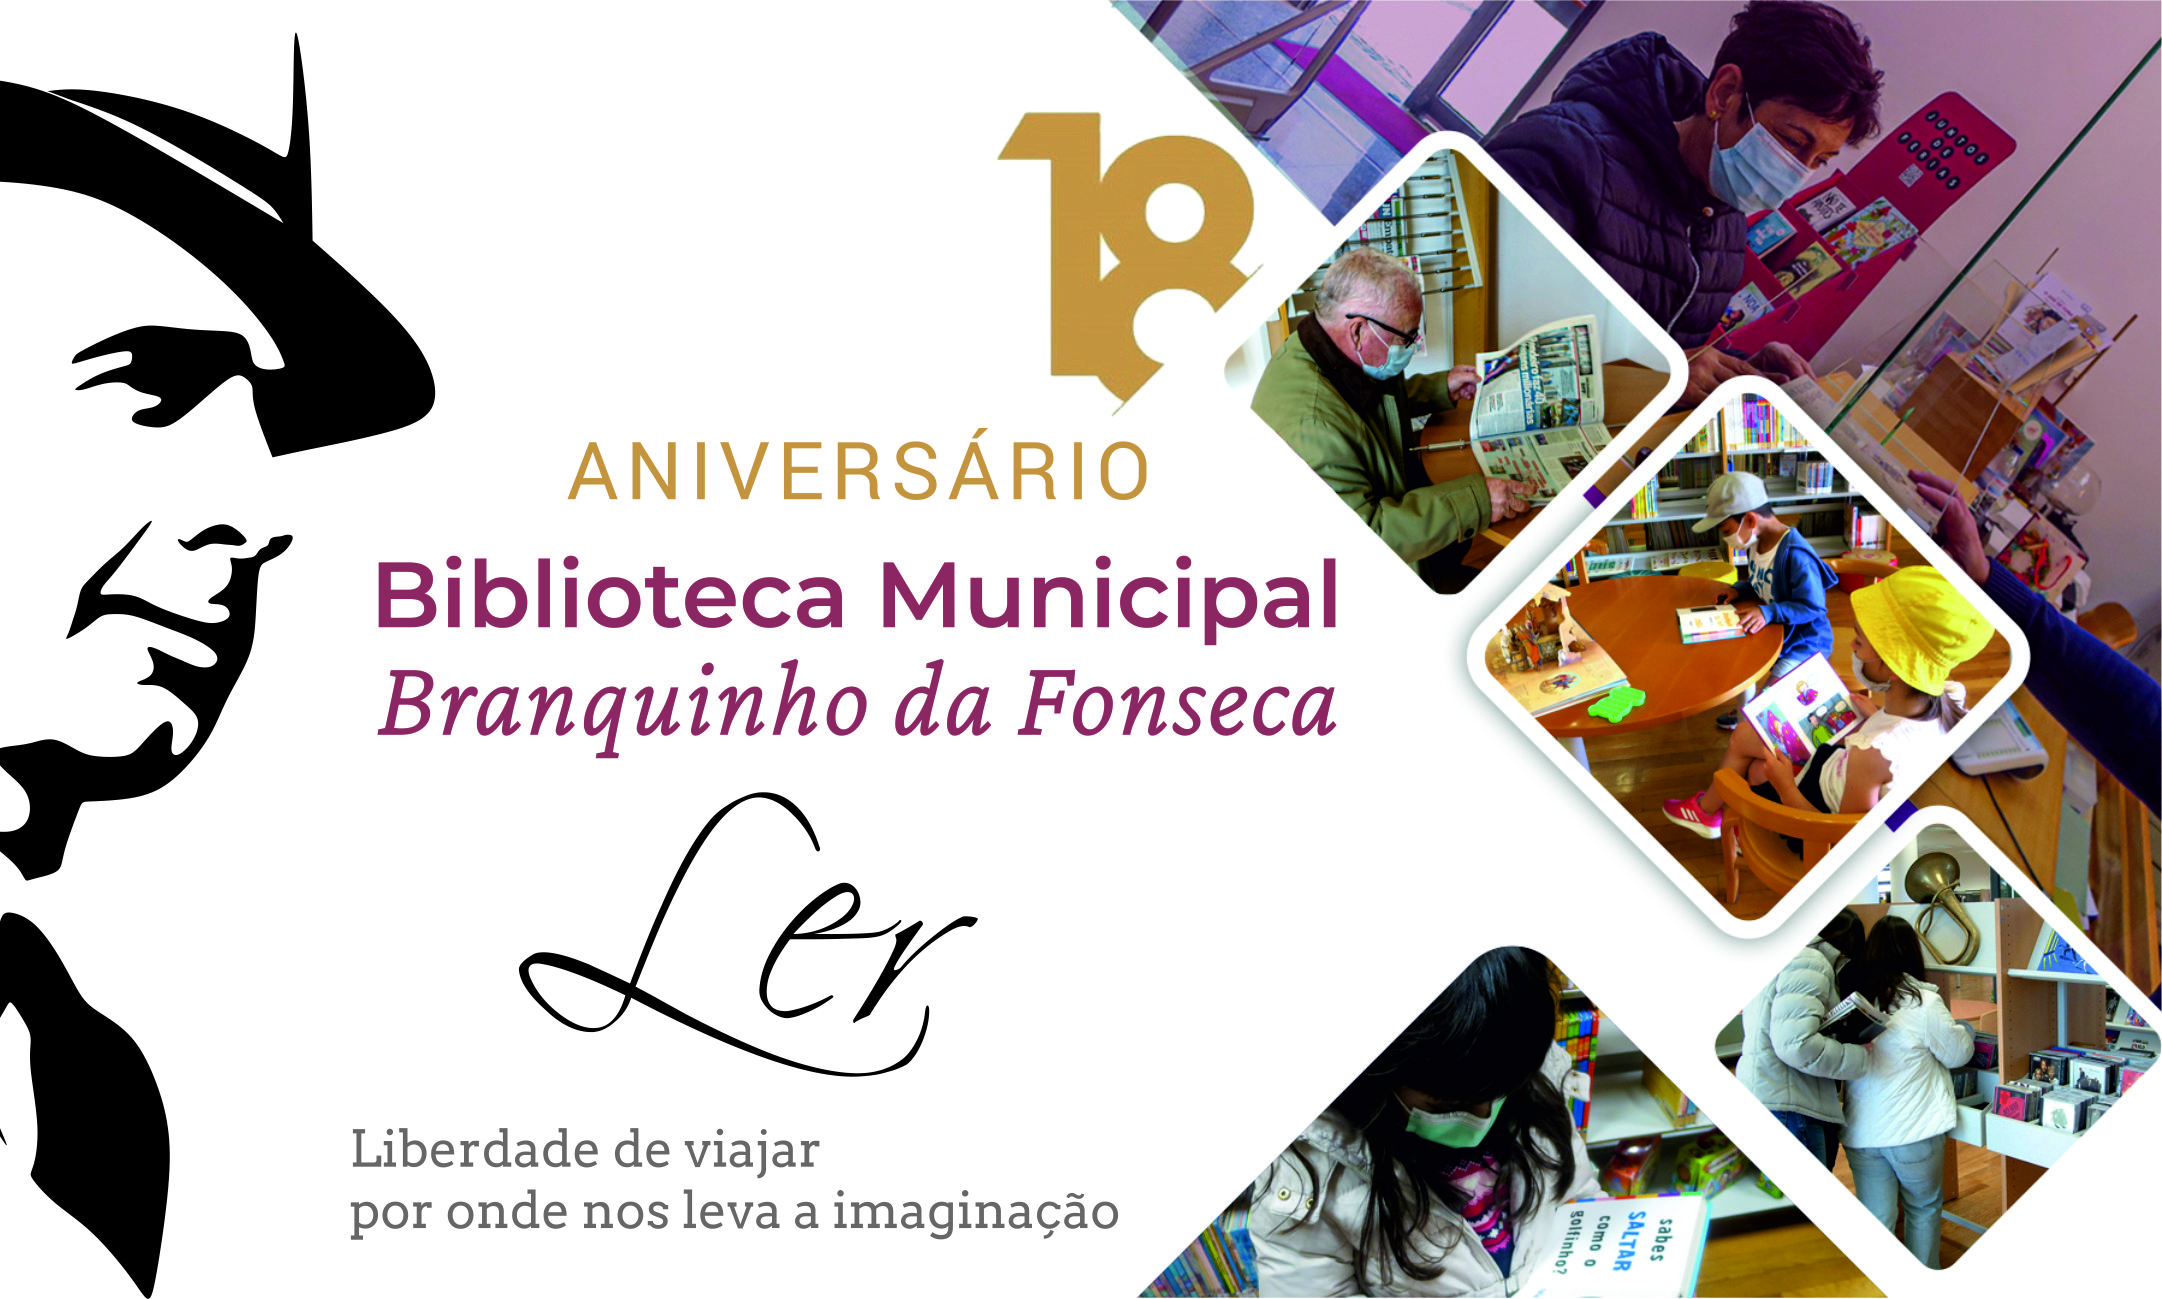 Aniversário da Biblioteca Municipal